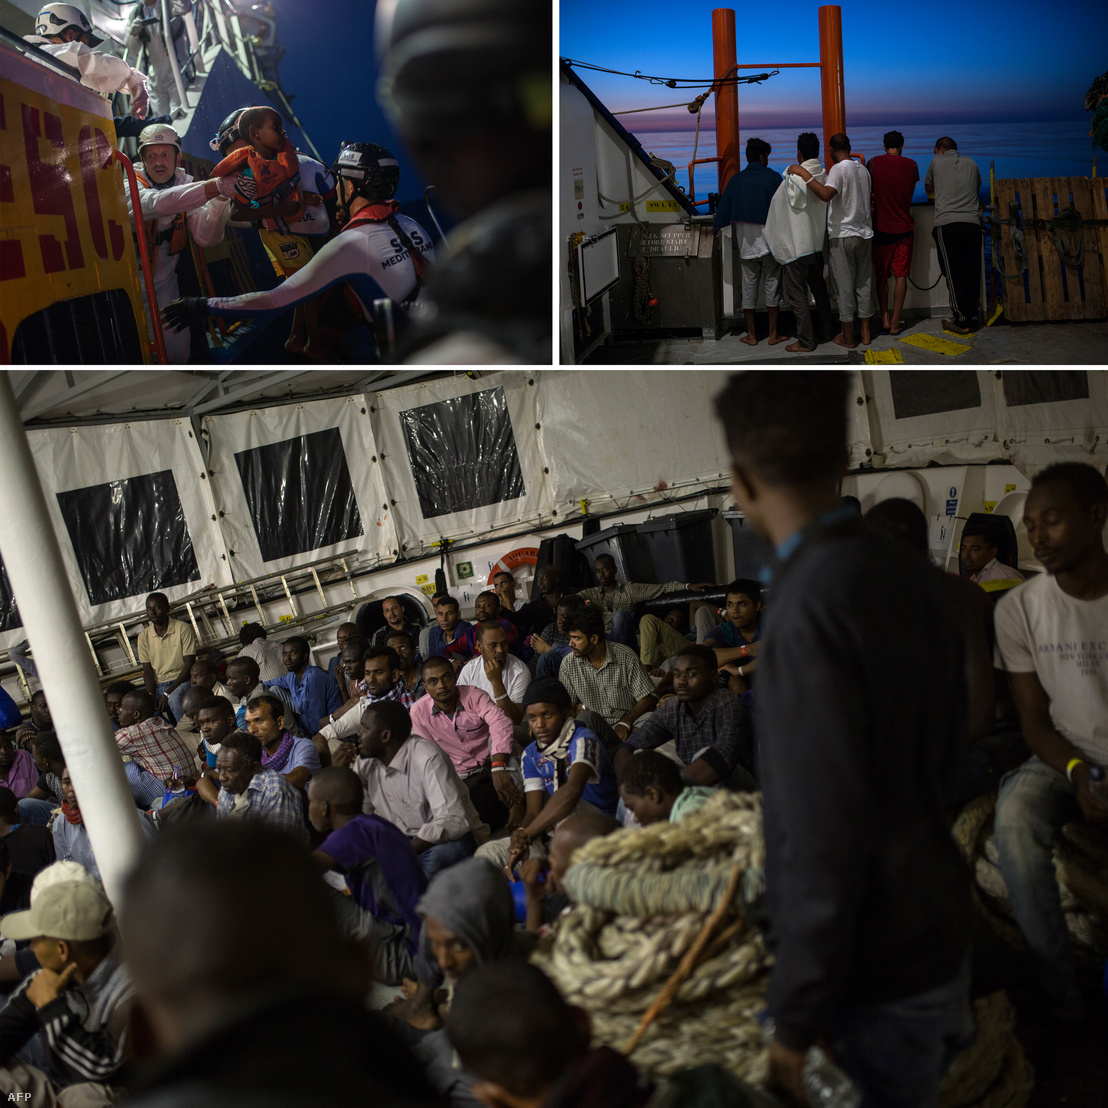 Menekültek az SOS Mediterranee és az Orvosok Határok Nélkül (MSF) szervezetek által működtetett Aquarius mentőhajó fedélzetén a Földközi-tengeren, 2017. augusztus 15-én